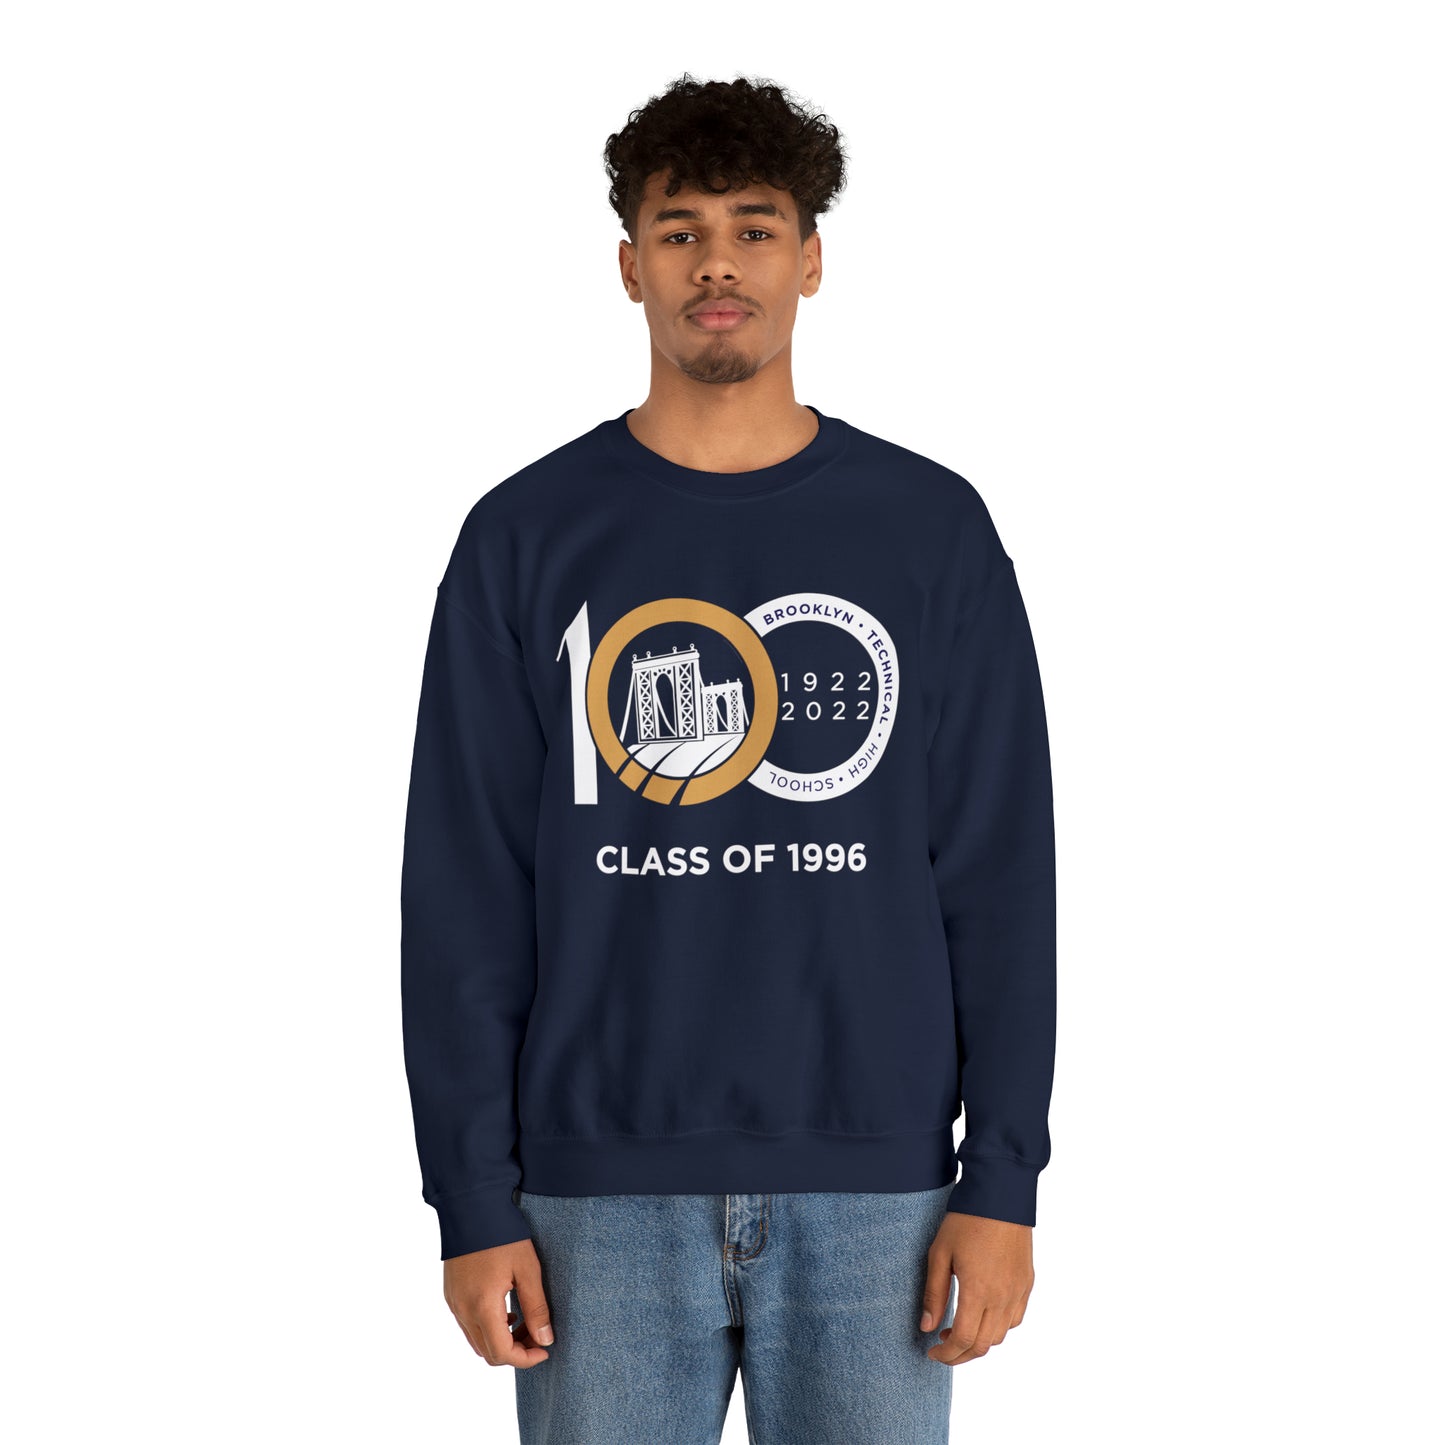 Centennial - Men's Heavy Blend Crewneck Sweatshirt - Class Of 1996